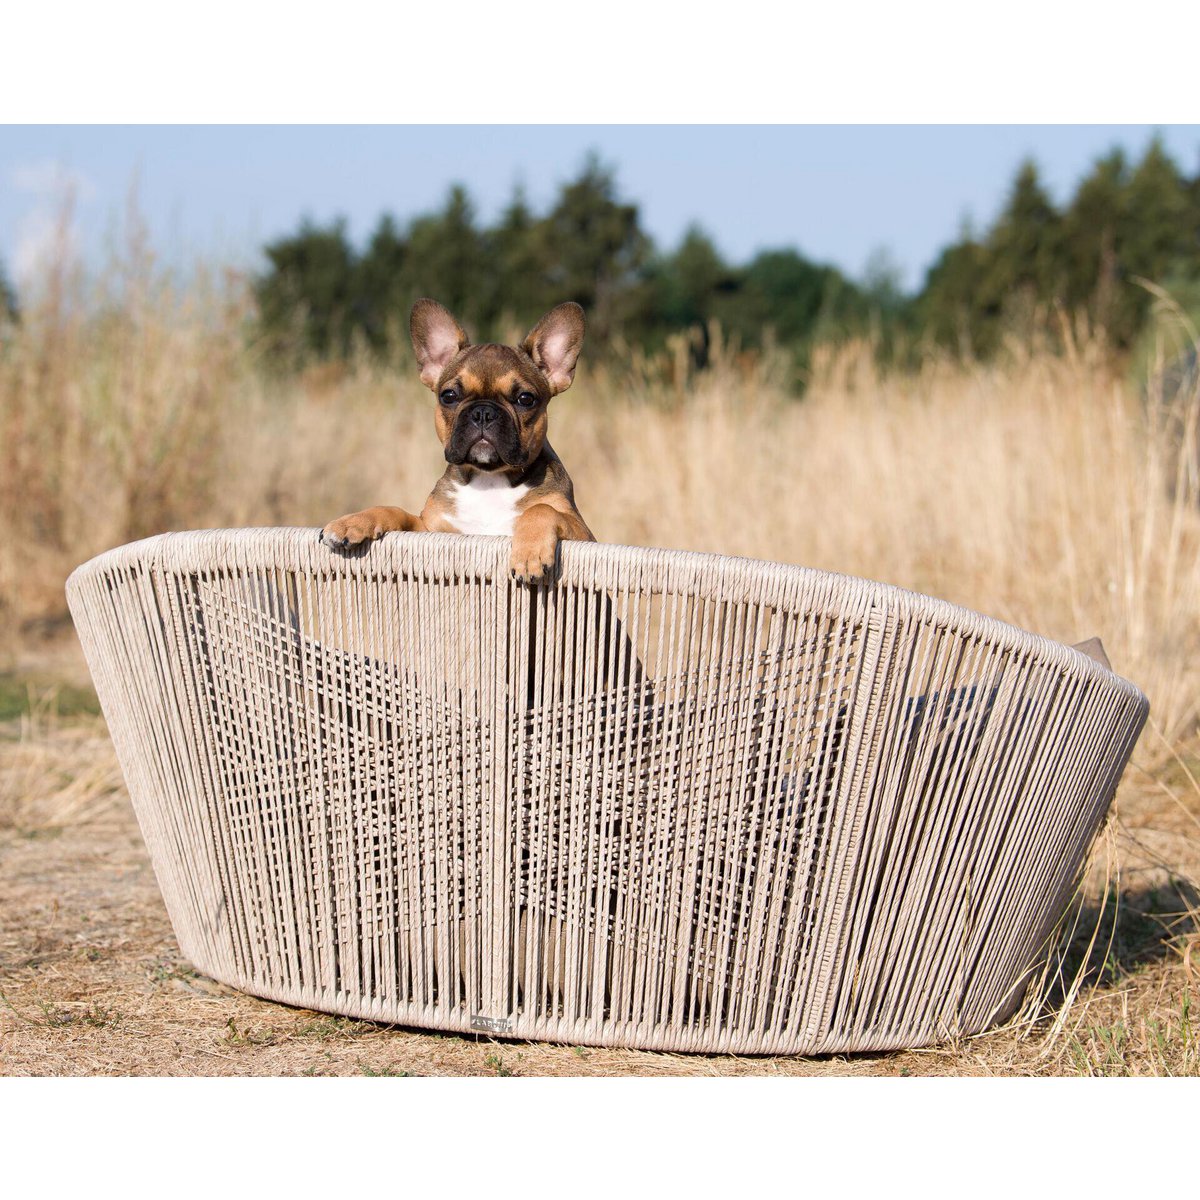 VOGUE Design hondenmand - Collectie TUDOR
Het hondenbed VOGUE van LABONI is een van de meest stijlvolle en comfortabele bedden die er zijn. Het is ontworpen met oog voor vakmanschap, doordacht design en hooLABONIwafwafVOGUE Design hondenmand - Collectie TUDOR